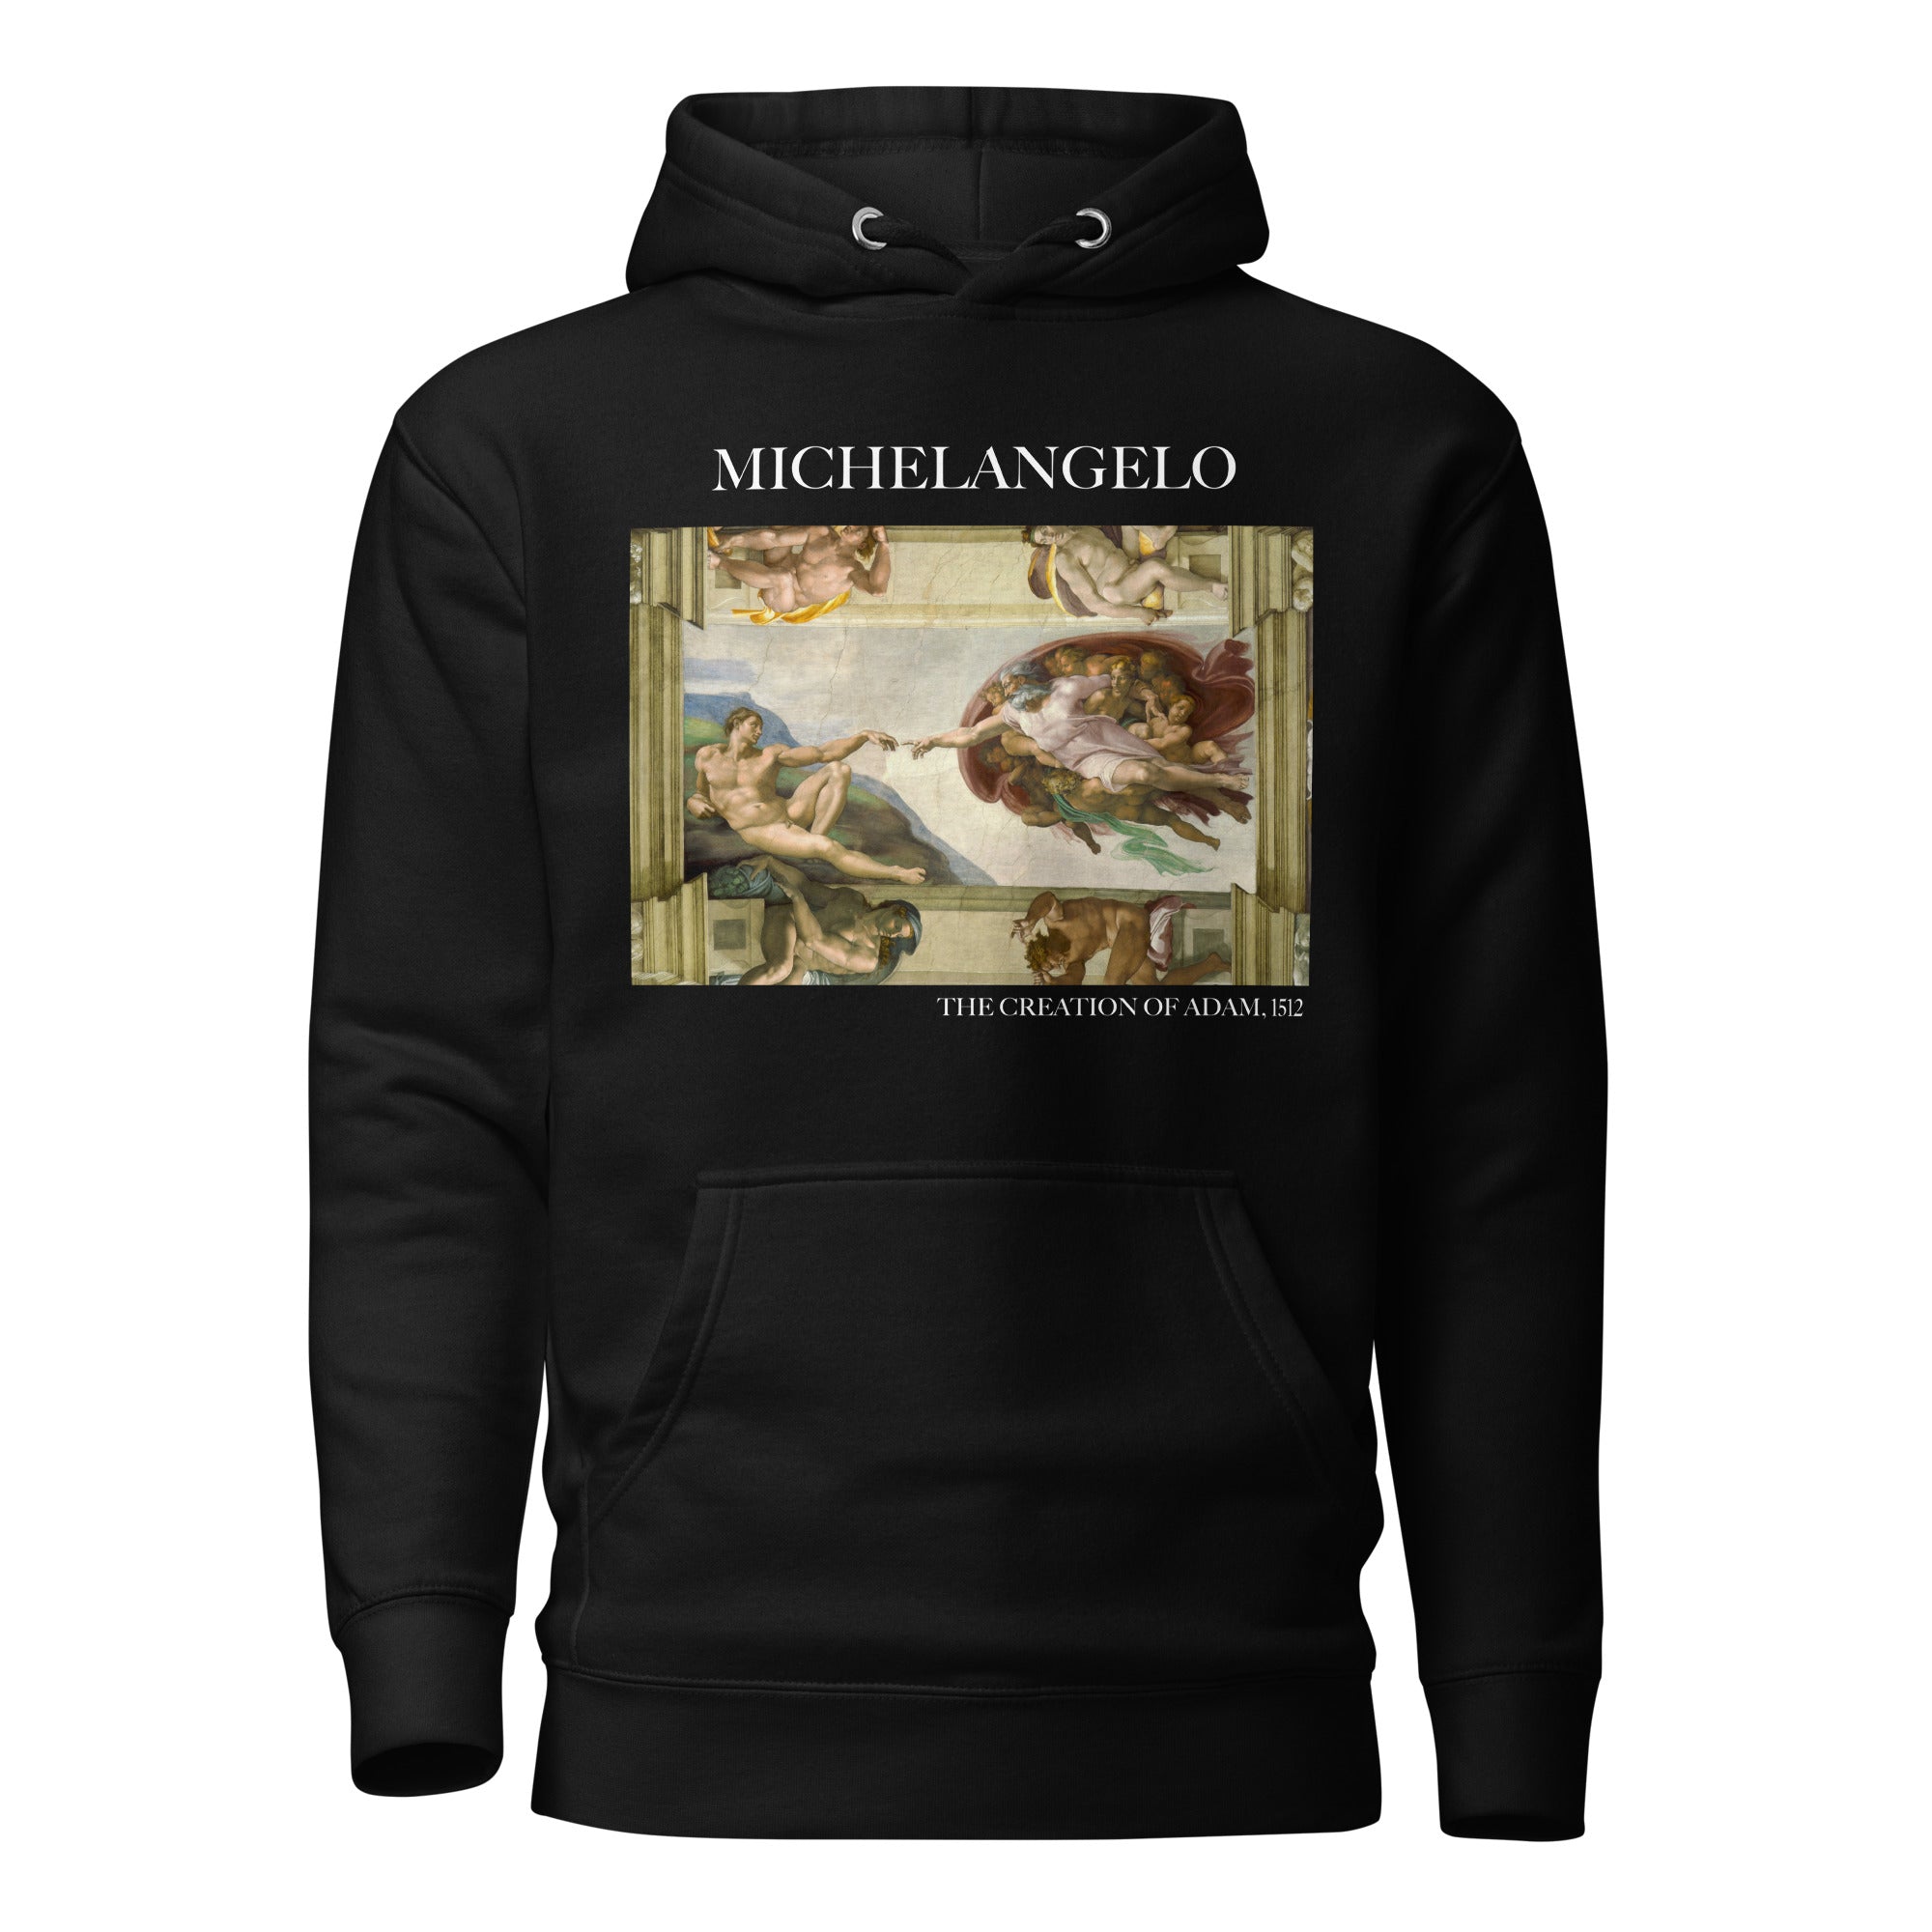 Kapuzenpullover mit berühmtem Gemälde „Die Erschaffung Adams“ von Michelangelo | Unisex-Kapuzenpullover mit Premium-Kunstmotiv